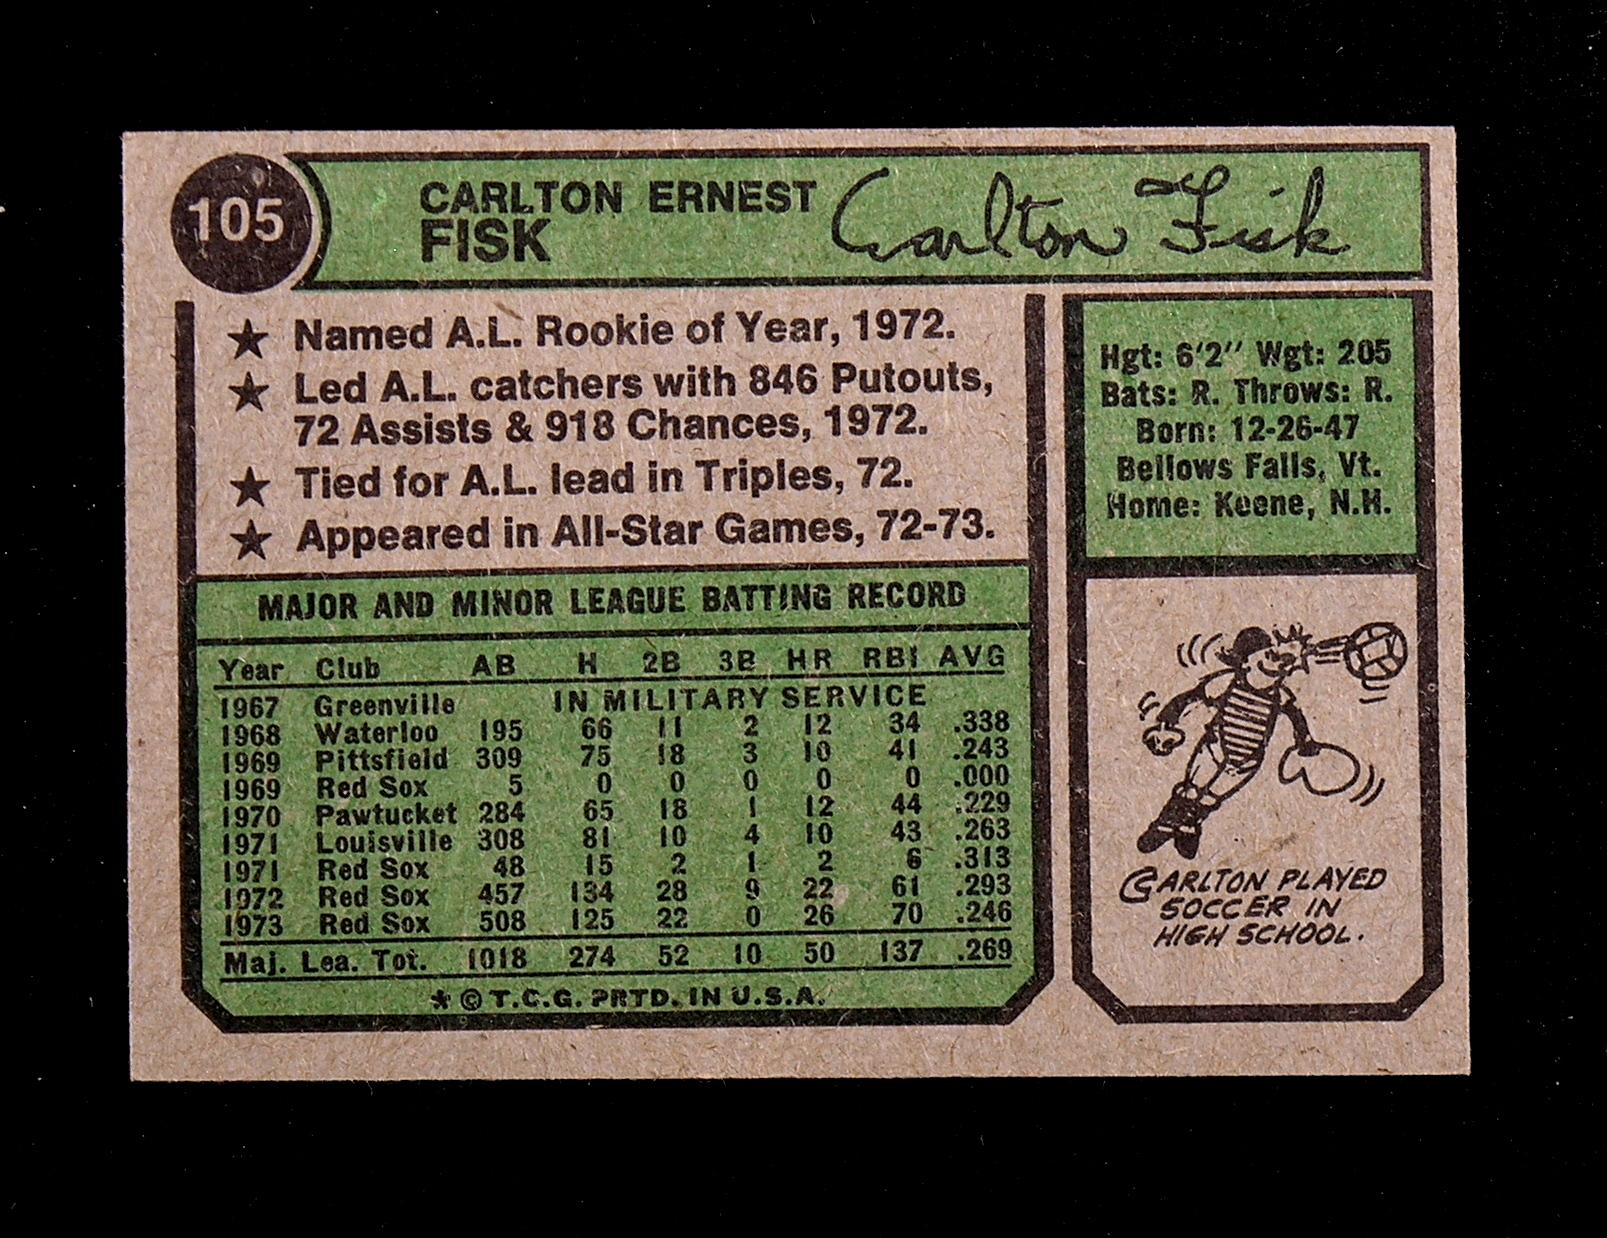 1974 Topps Baseball Card #105 Hall of Famer Carlton Fisk Boston Red Sox